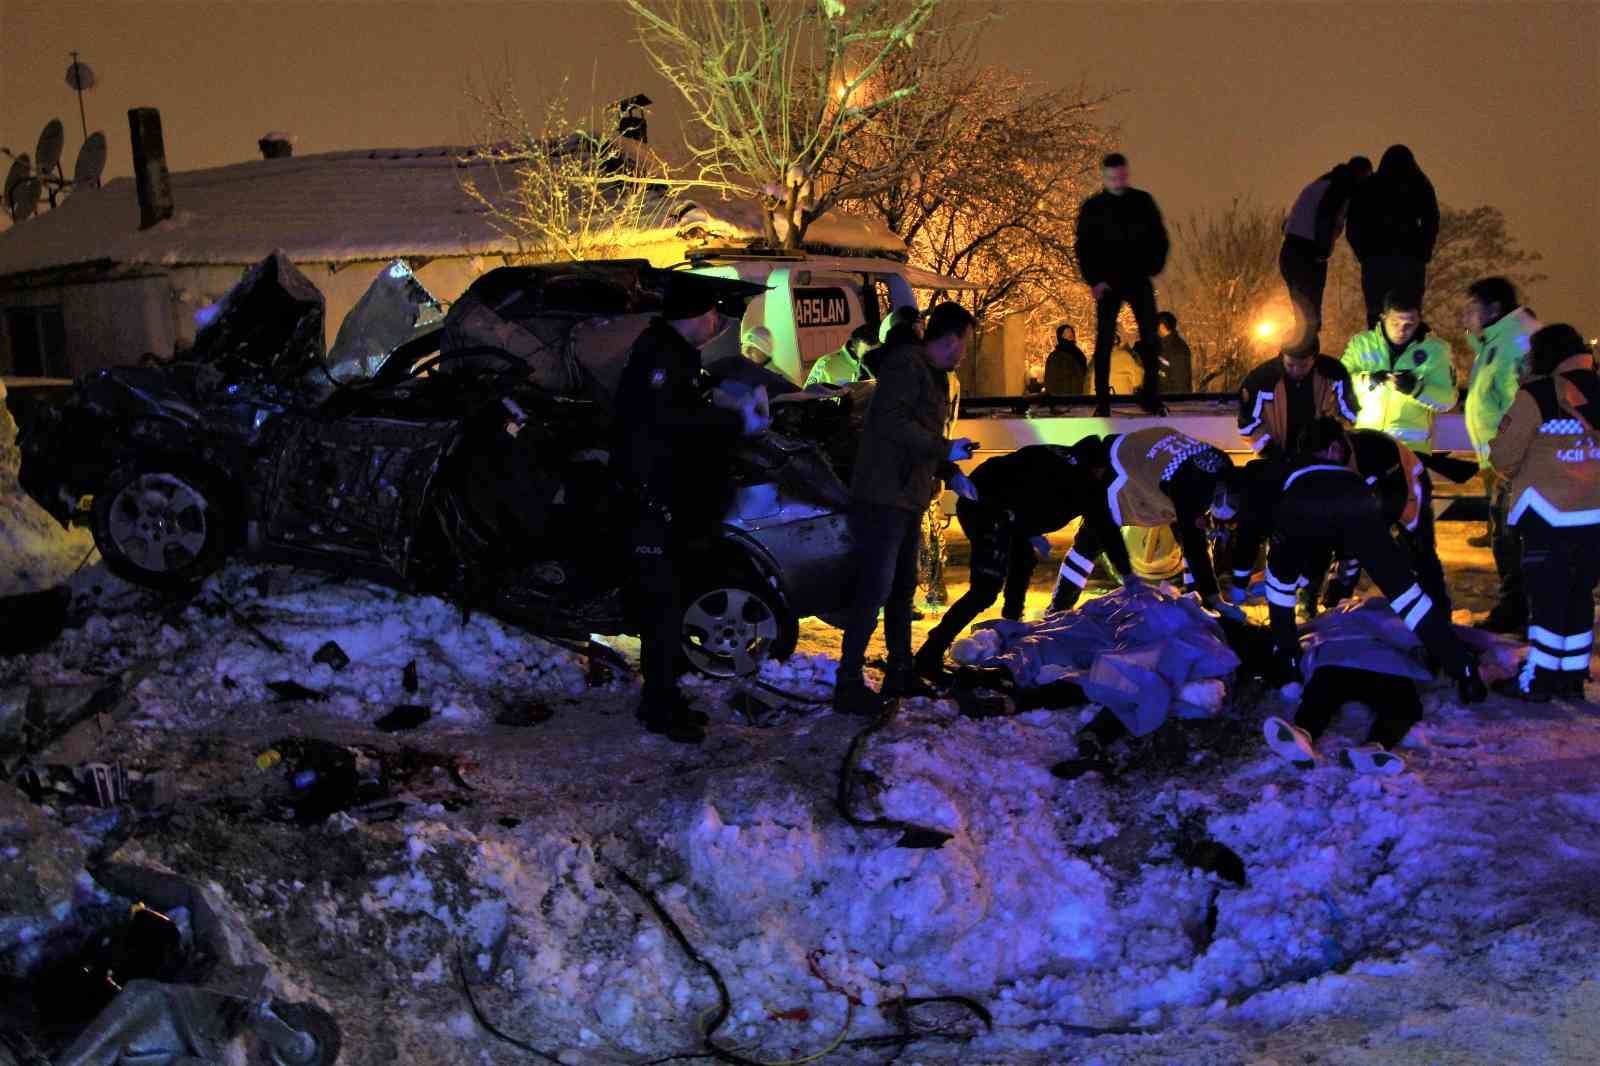 İstinat duvarına çarpan otomobil 4 gence mezar oldu #burdur